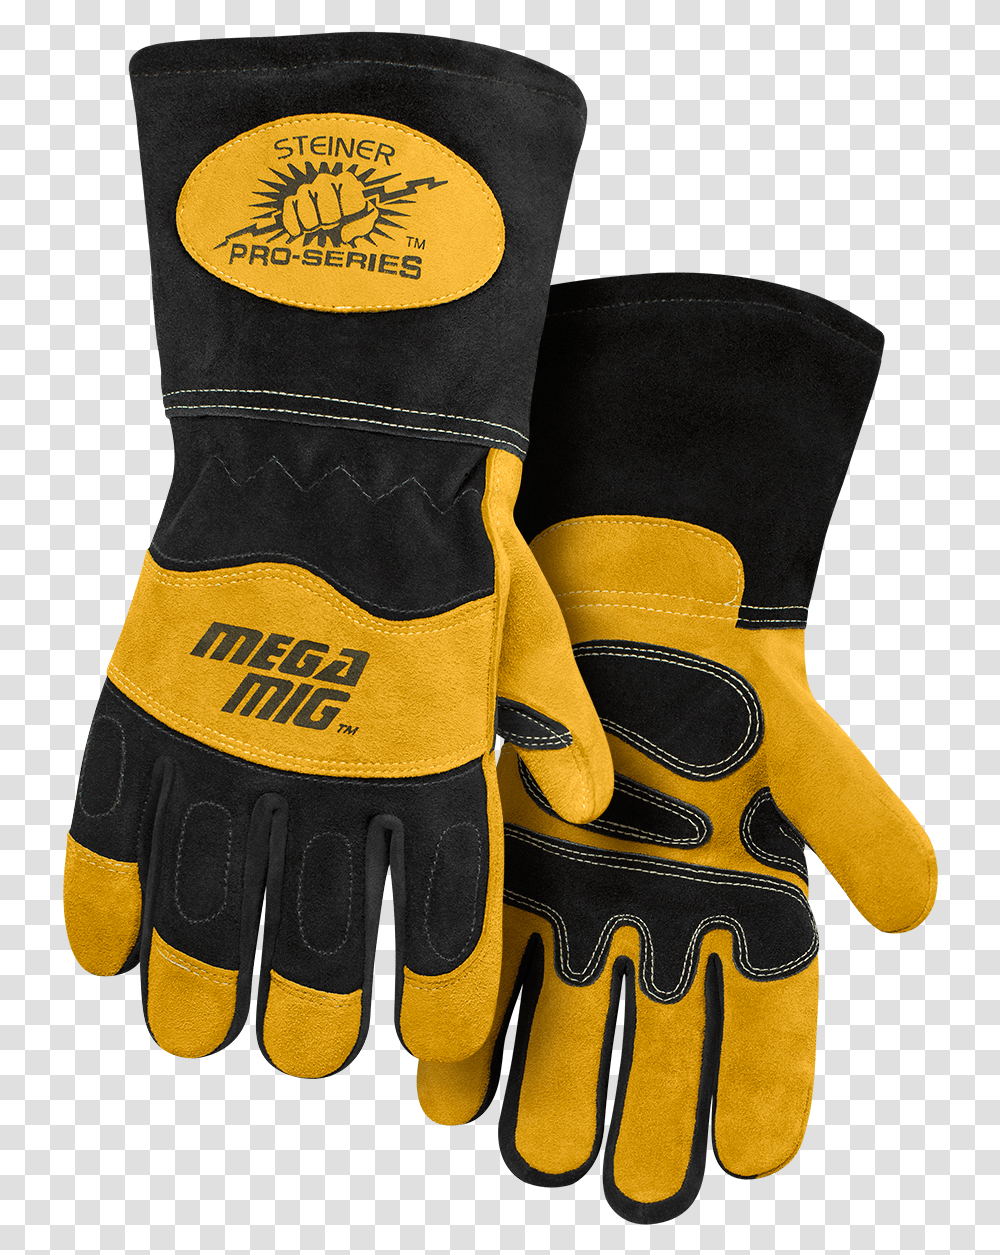 Safety Glove, Apparel, Vest, Lifejacket Transparent Png